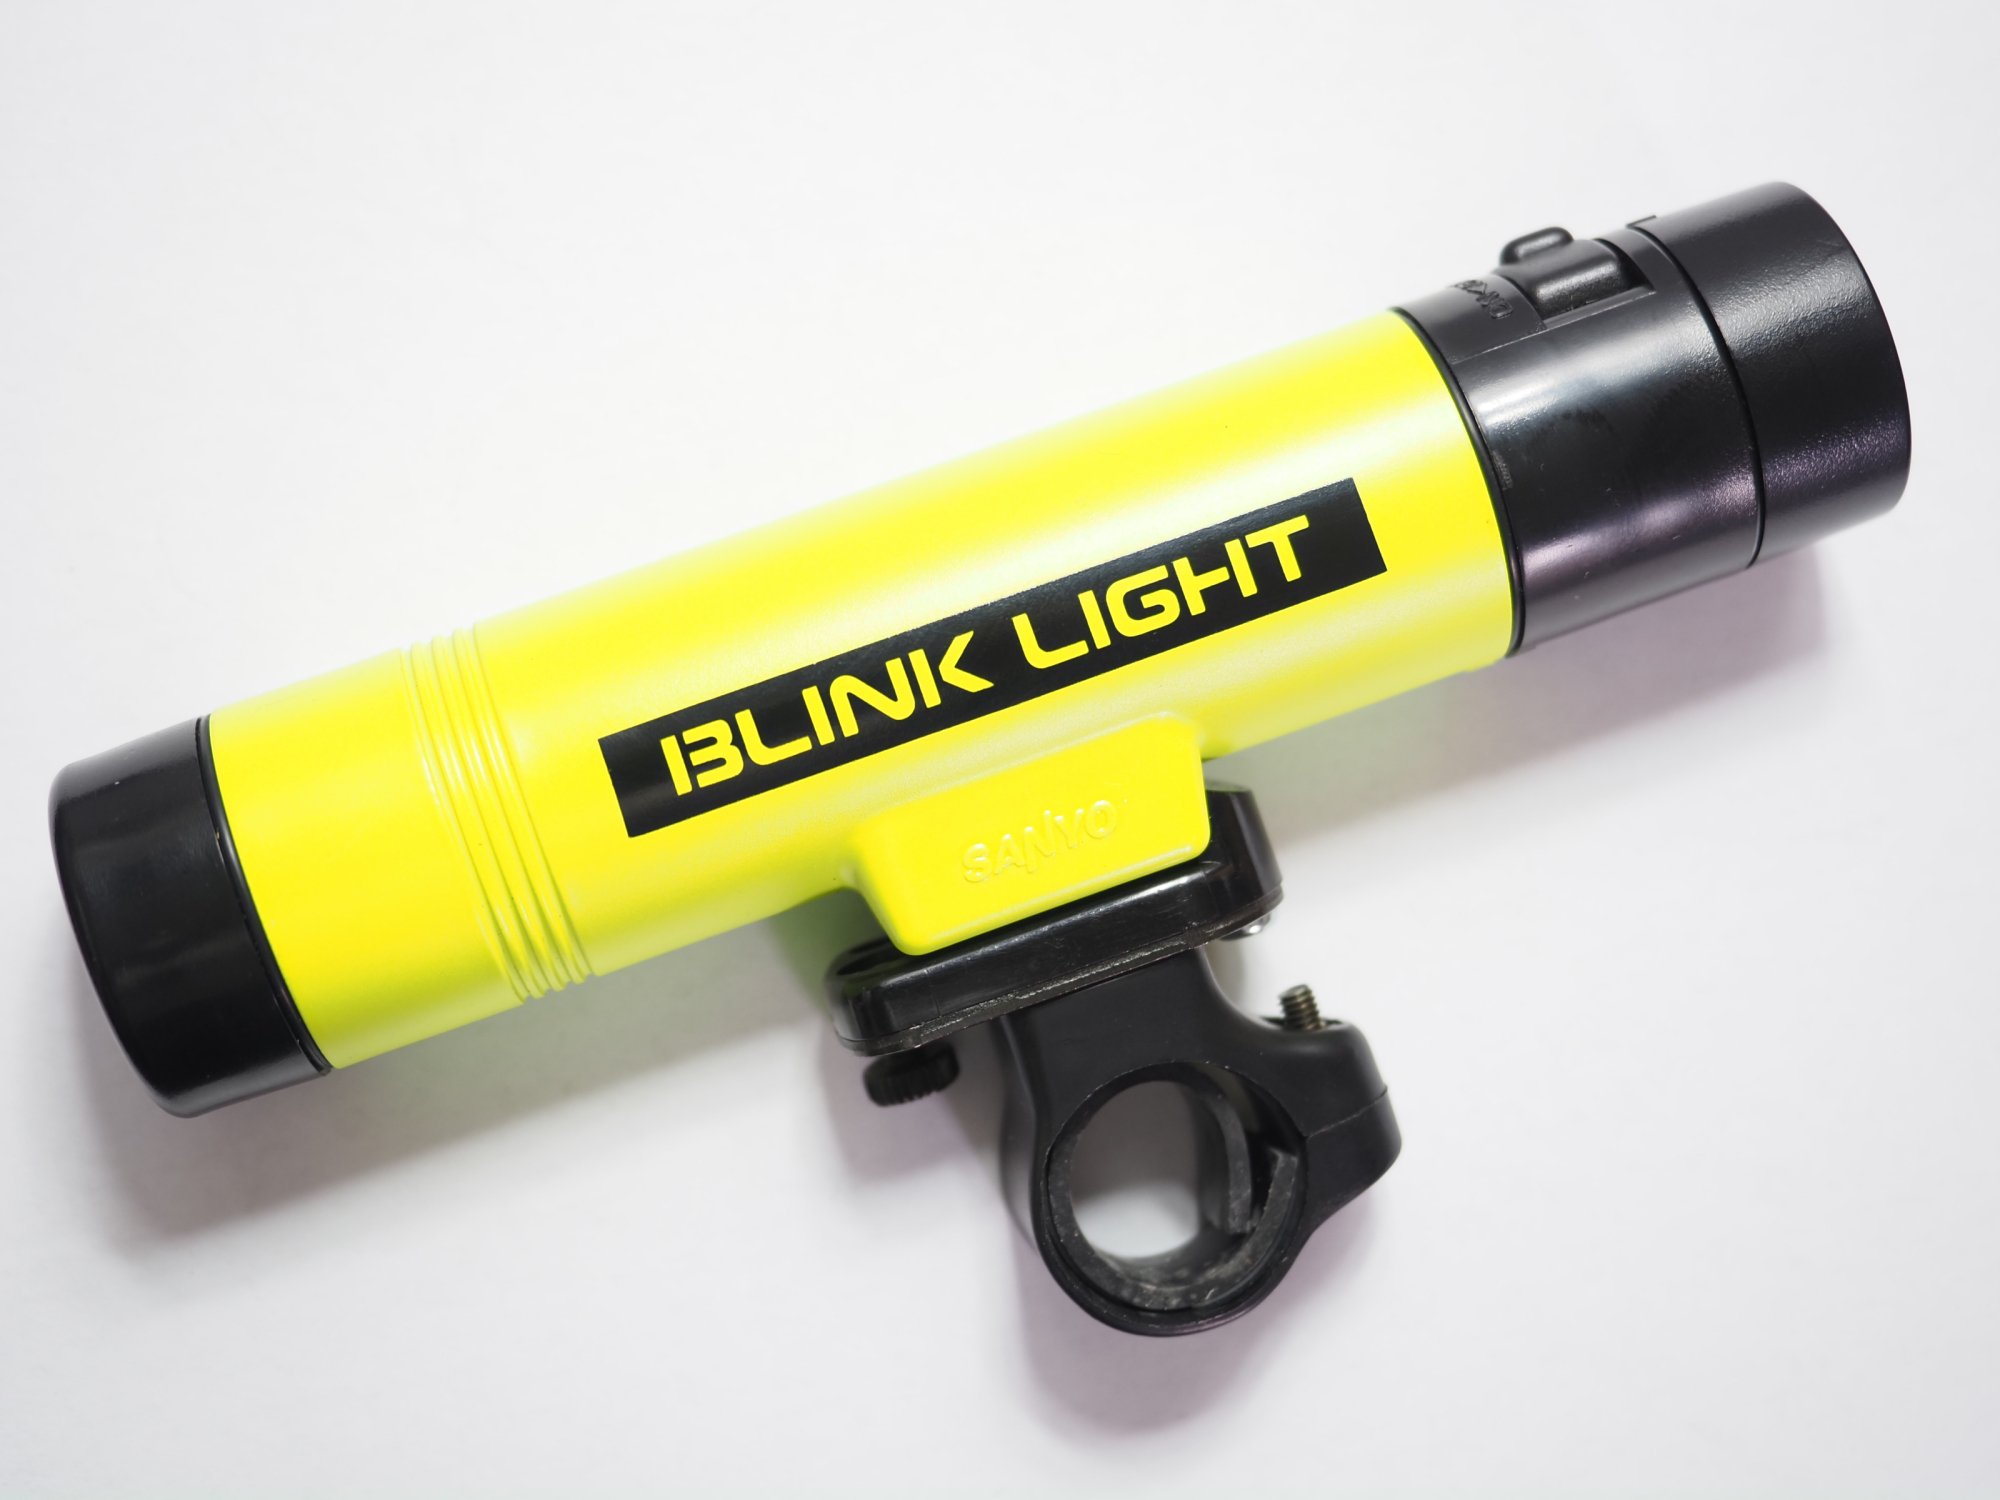 SANYO BLINK LIGHT LK-H201